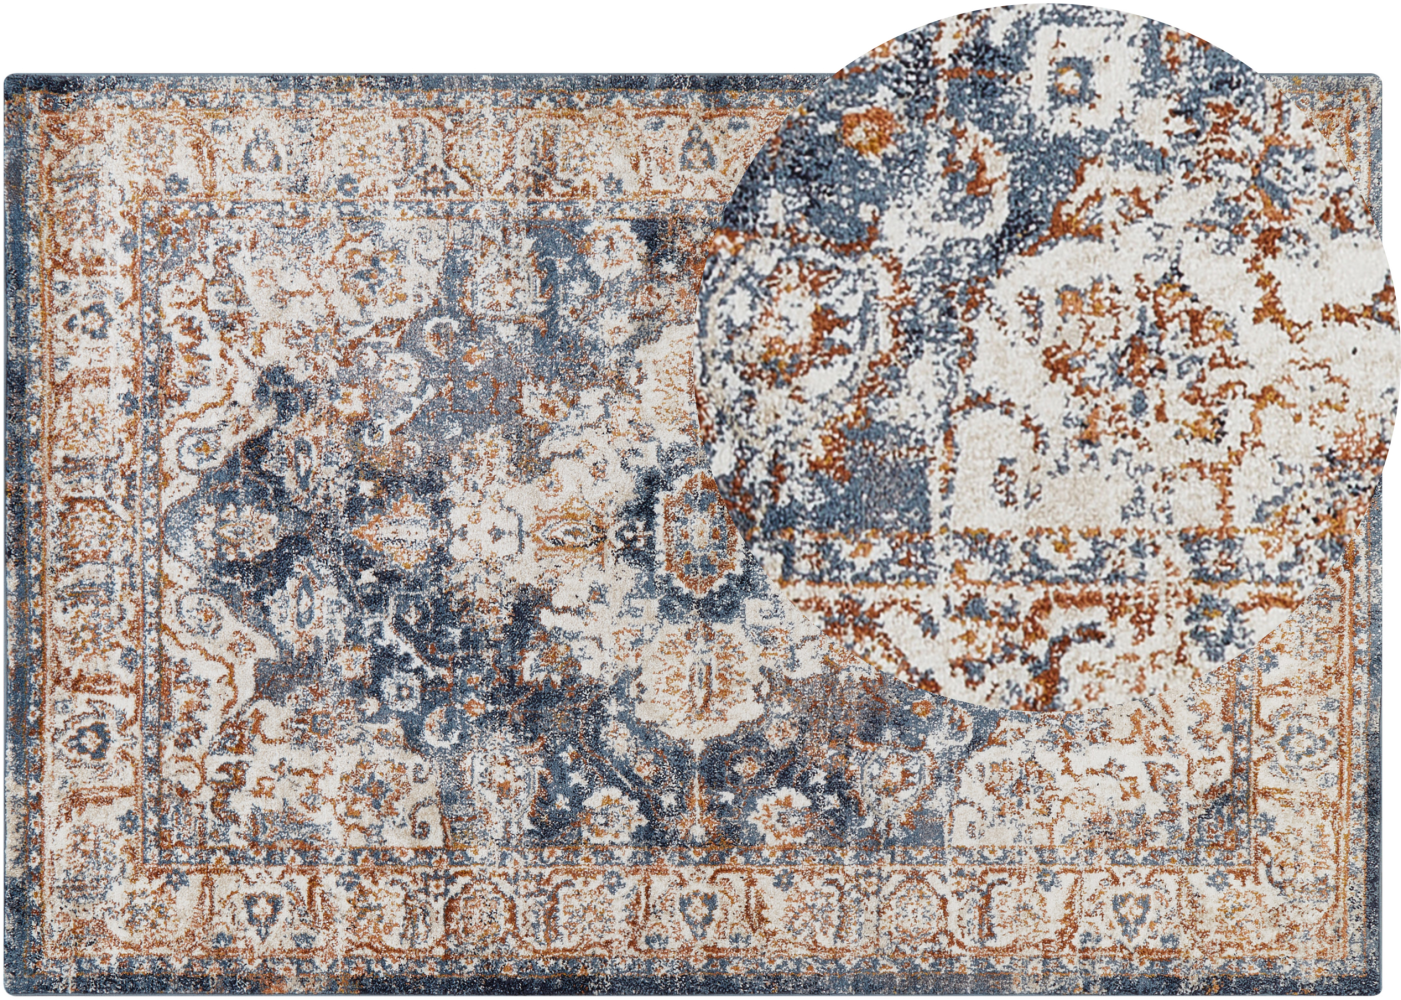 Teppich beige blau 200 x 300 cm orientalisches Muster Kurzflor DVIN Bild 1